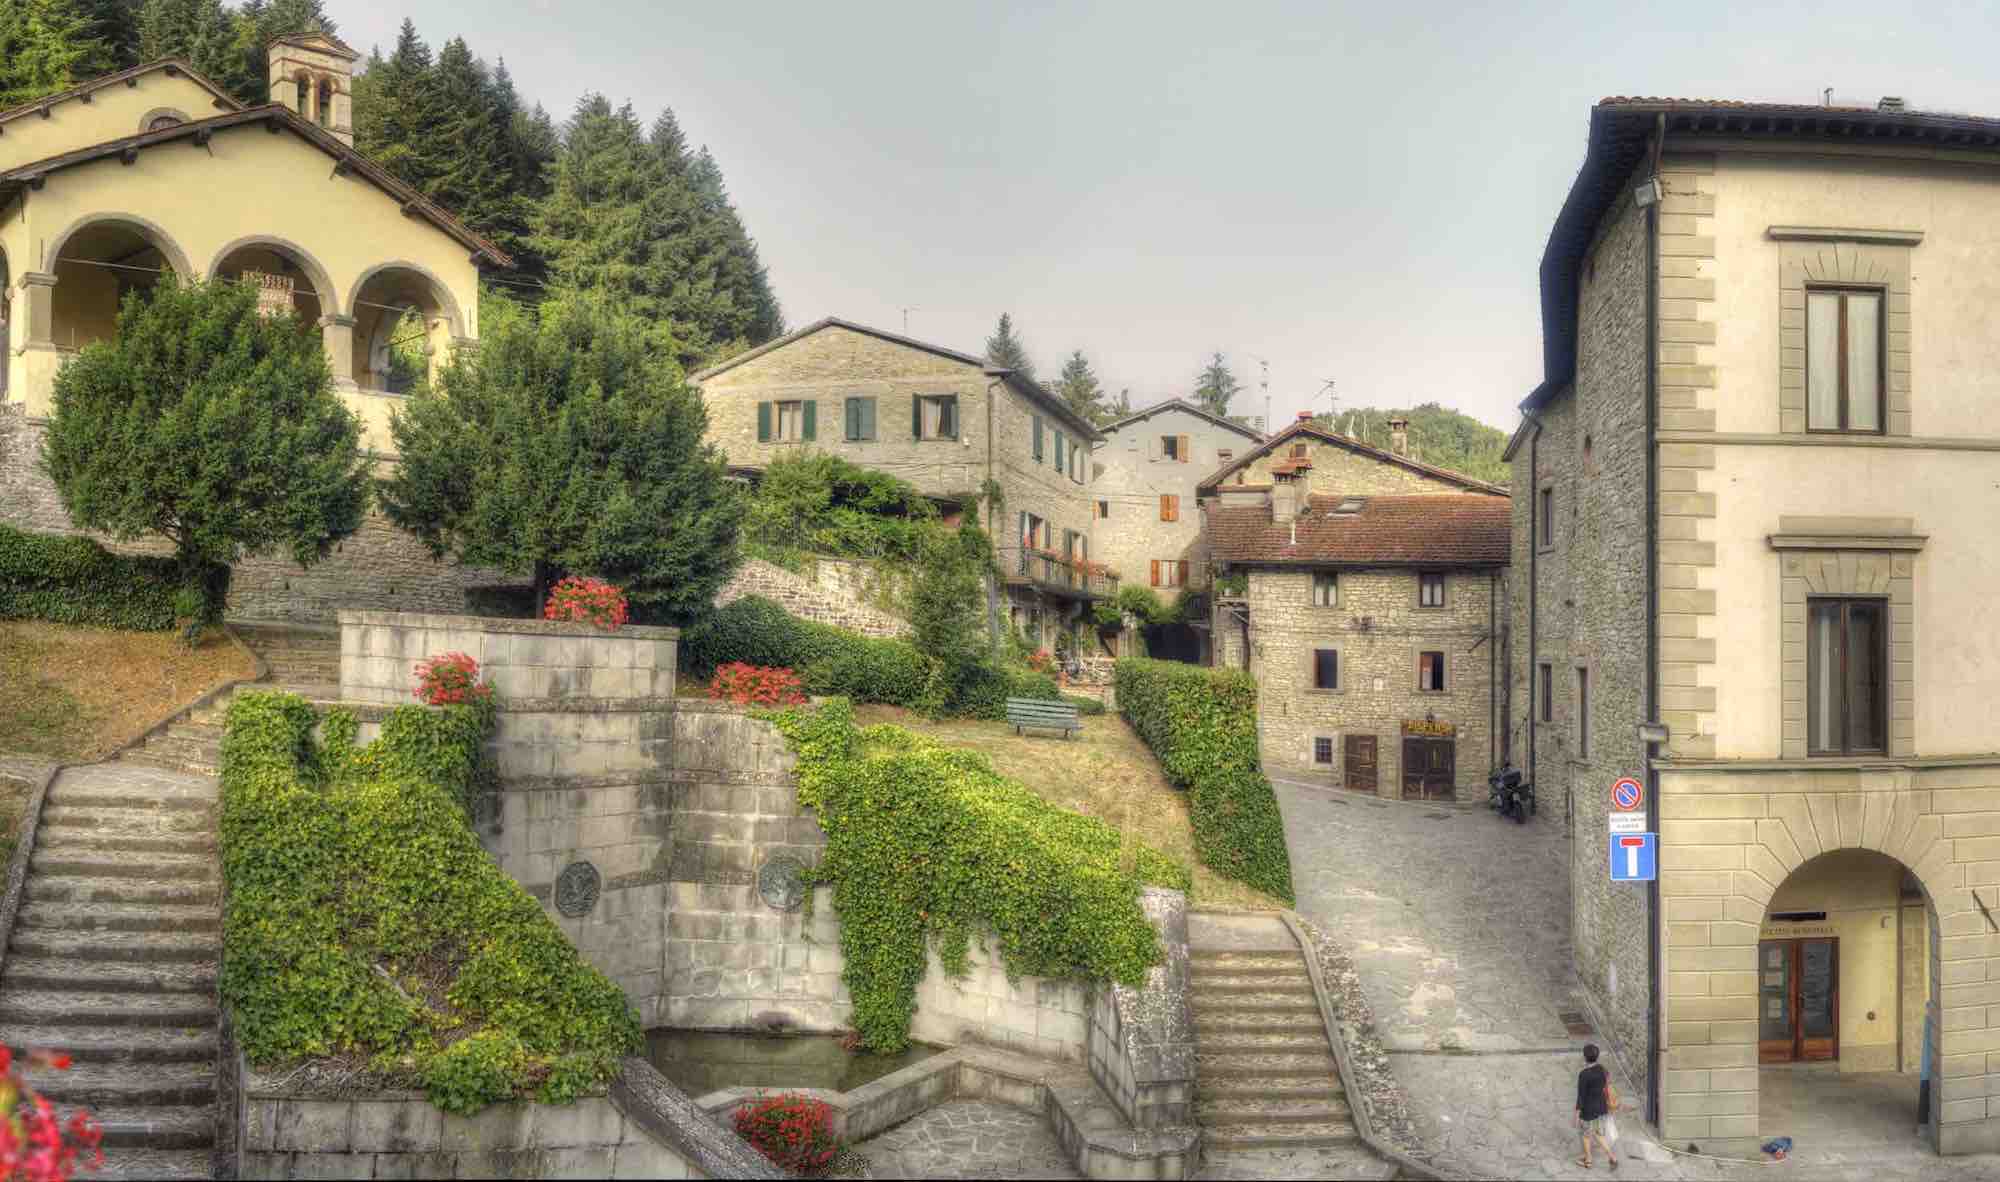 Locanda Senio, uno degli alberghi diffusi più belli d'Italia, si trova in Toscana nascosto tra i vicoli di uno dei Borghi più belli d'Italia